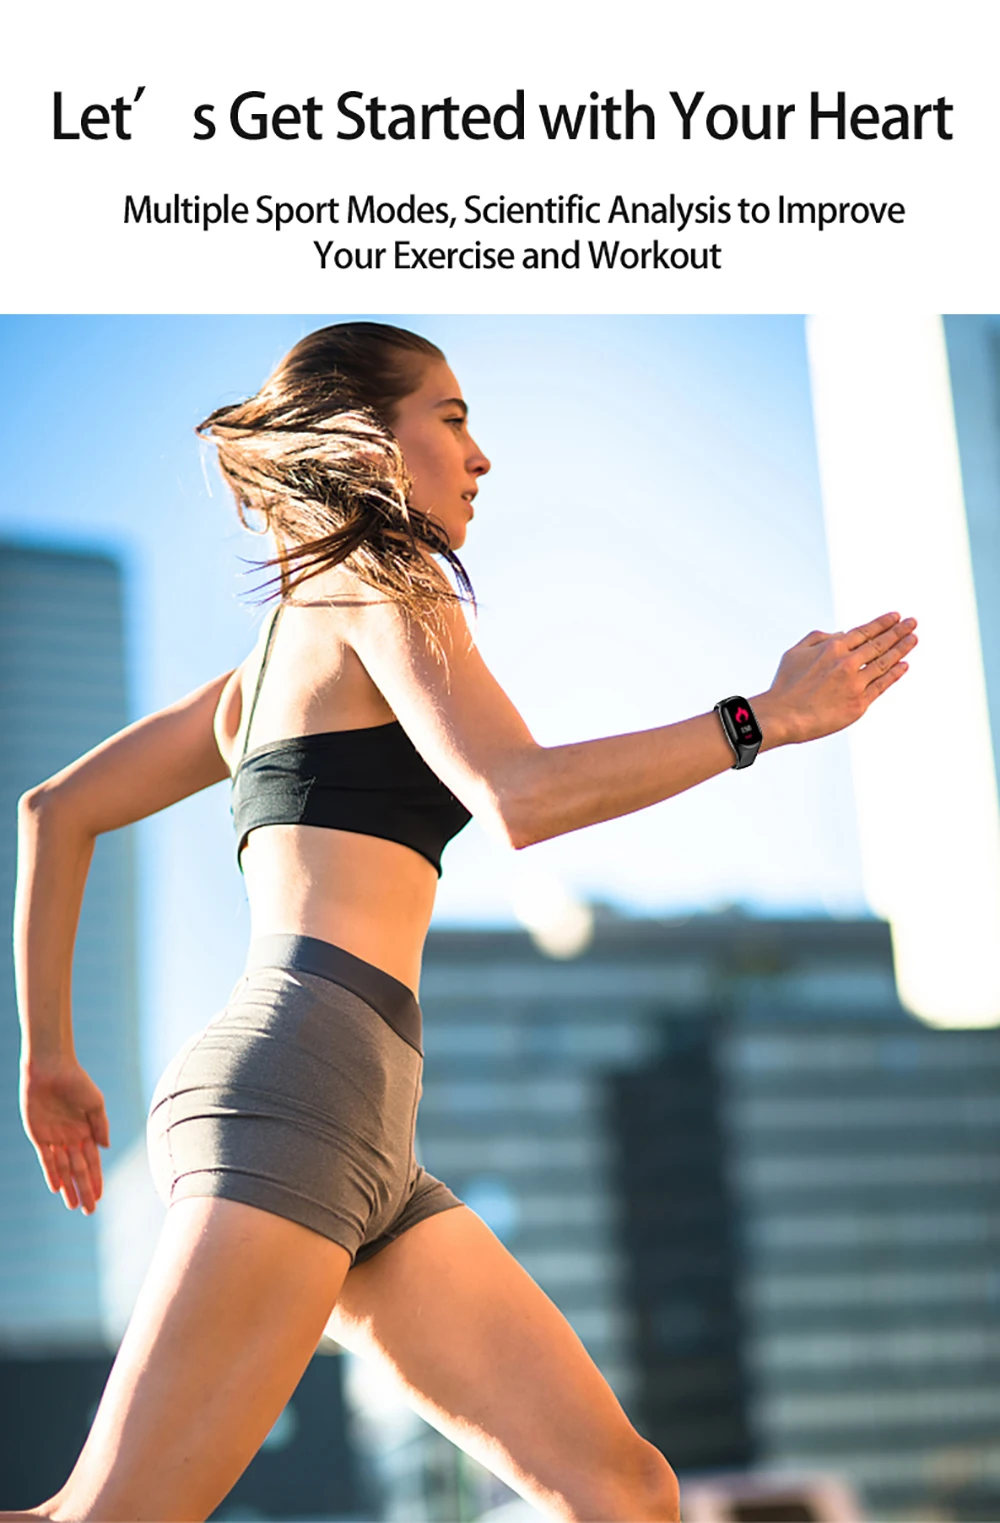 LEMFO M1 AI Смарт-часы для женщин и мужчин с Bluetooth наушником пульсометр Монитор артериального давления спортивные Смарт-часы для Android IOS